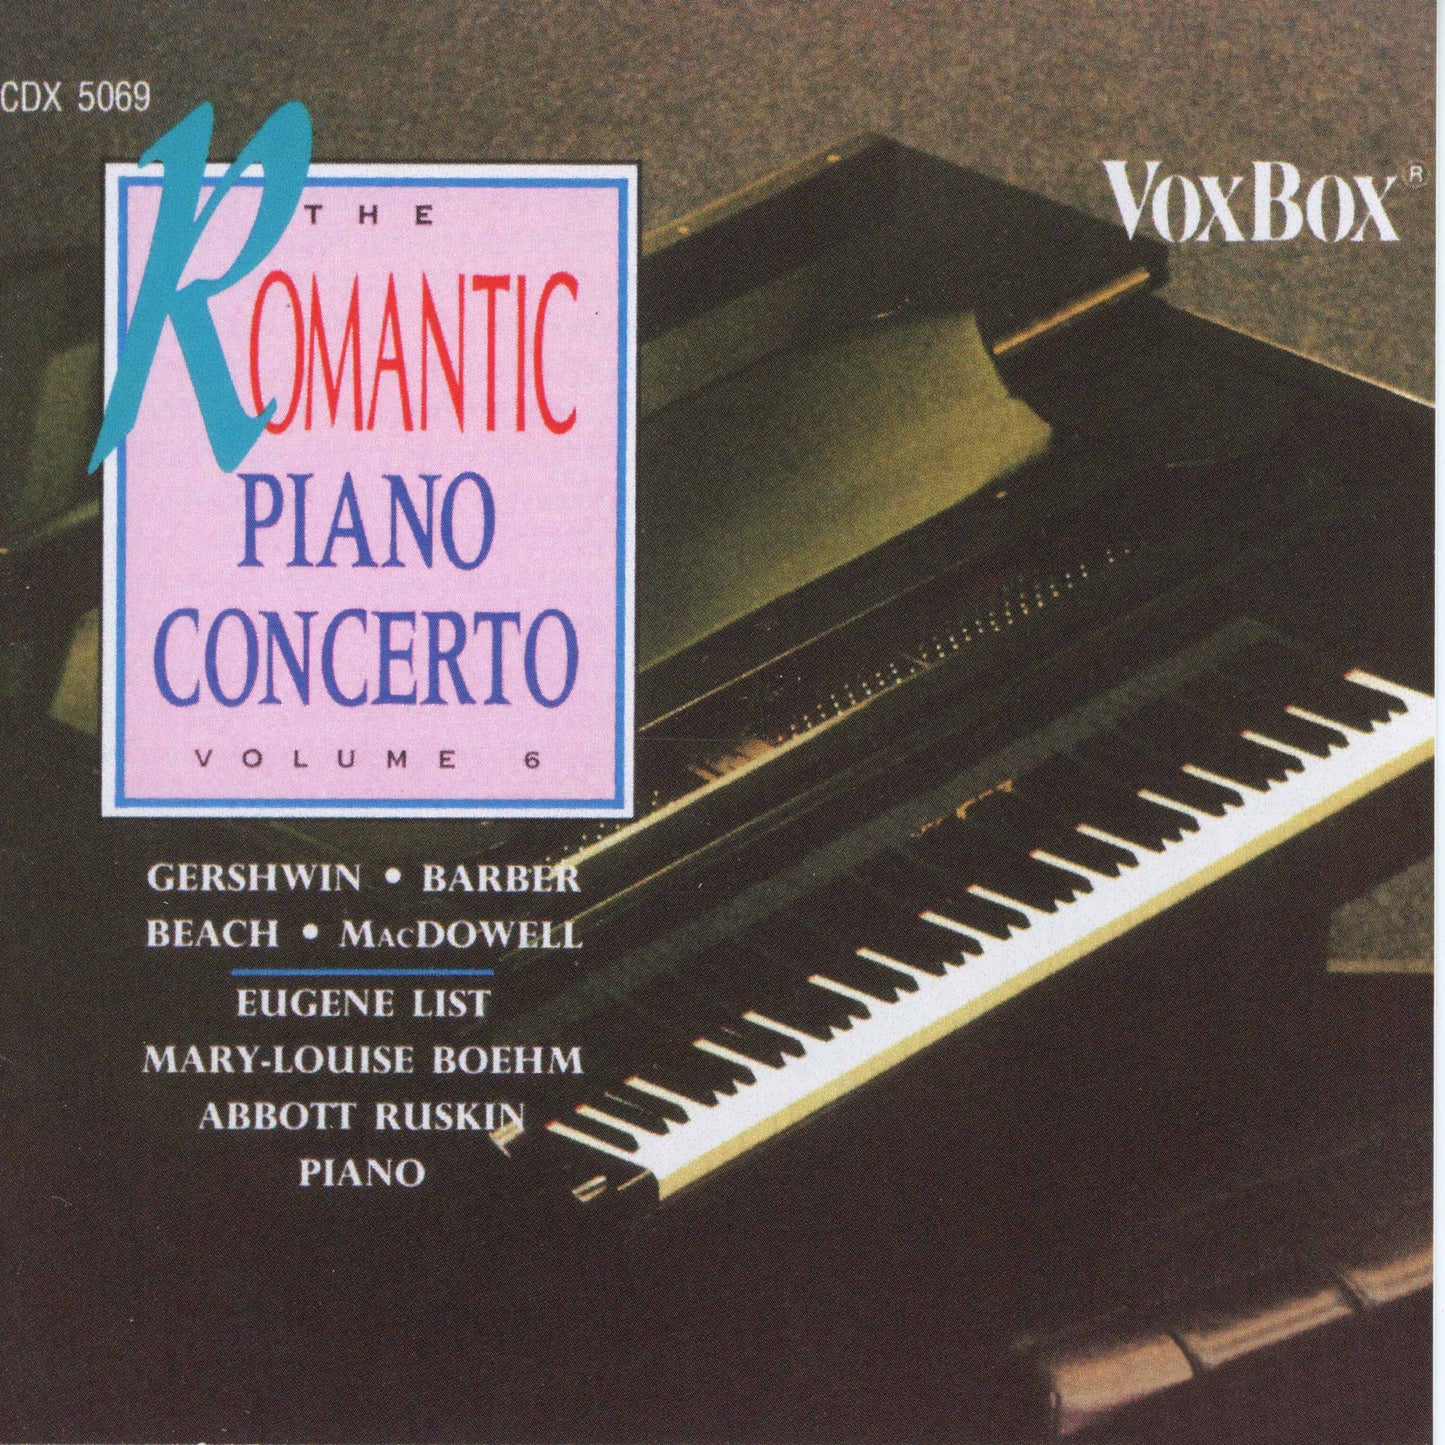 The Romantic Piano Concerto, Vol. 6